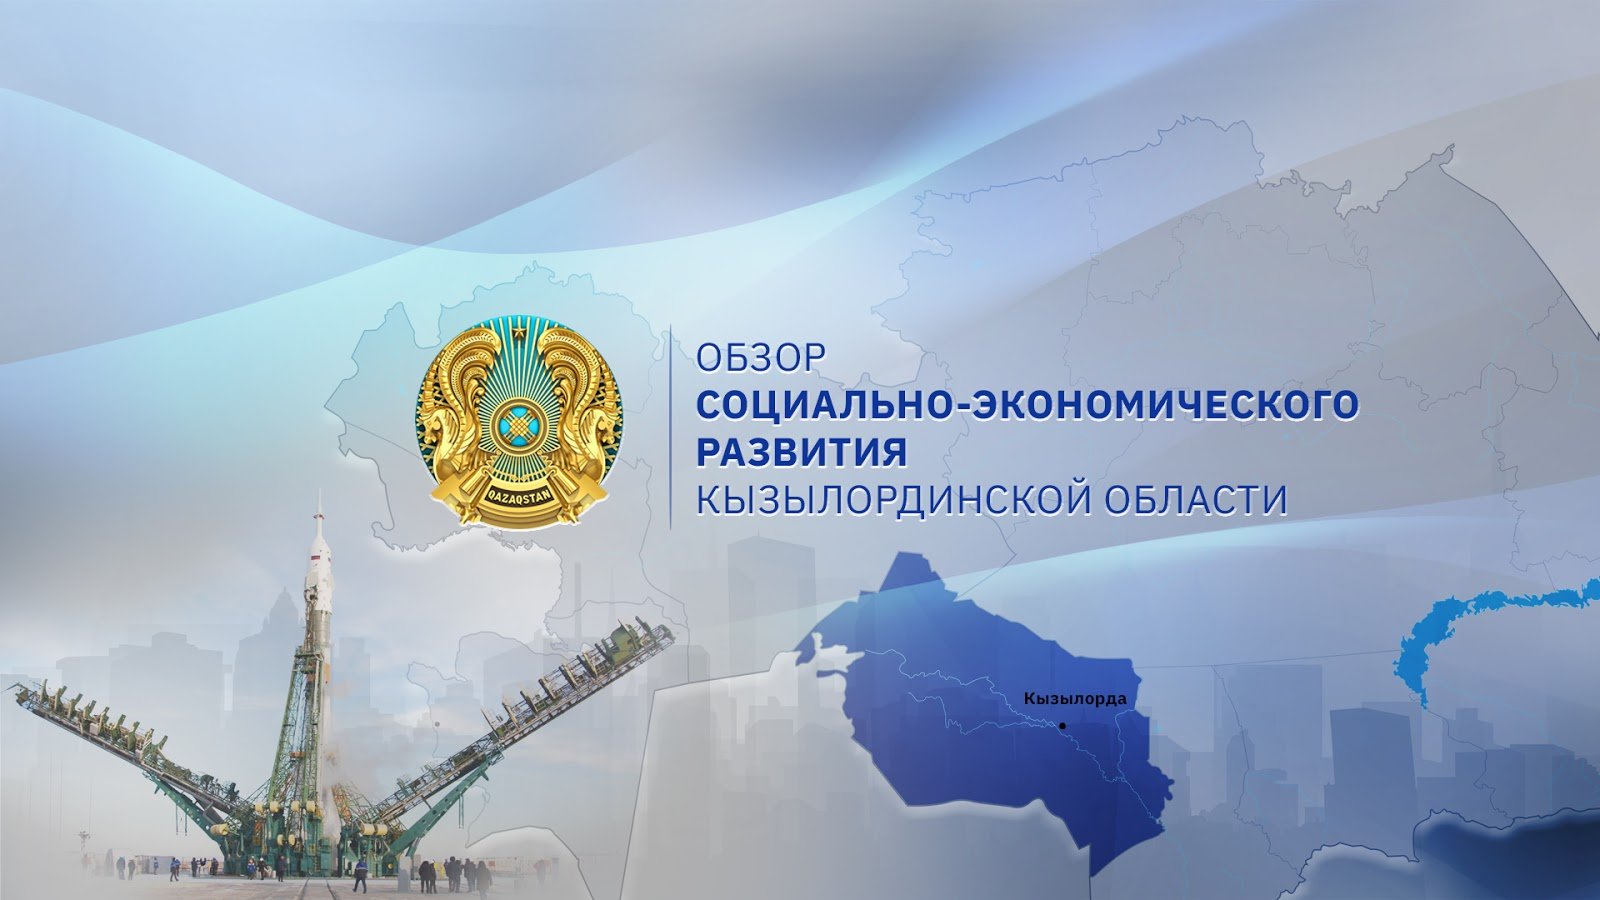 Экспорт сельхозпродукции и развитие СЭЗ «Байконур»: как развивалась Кызылординская область с января по август 2019 года